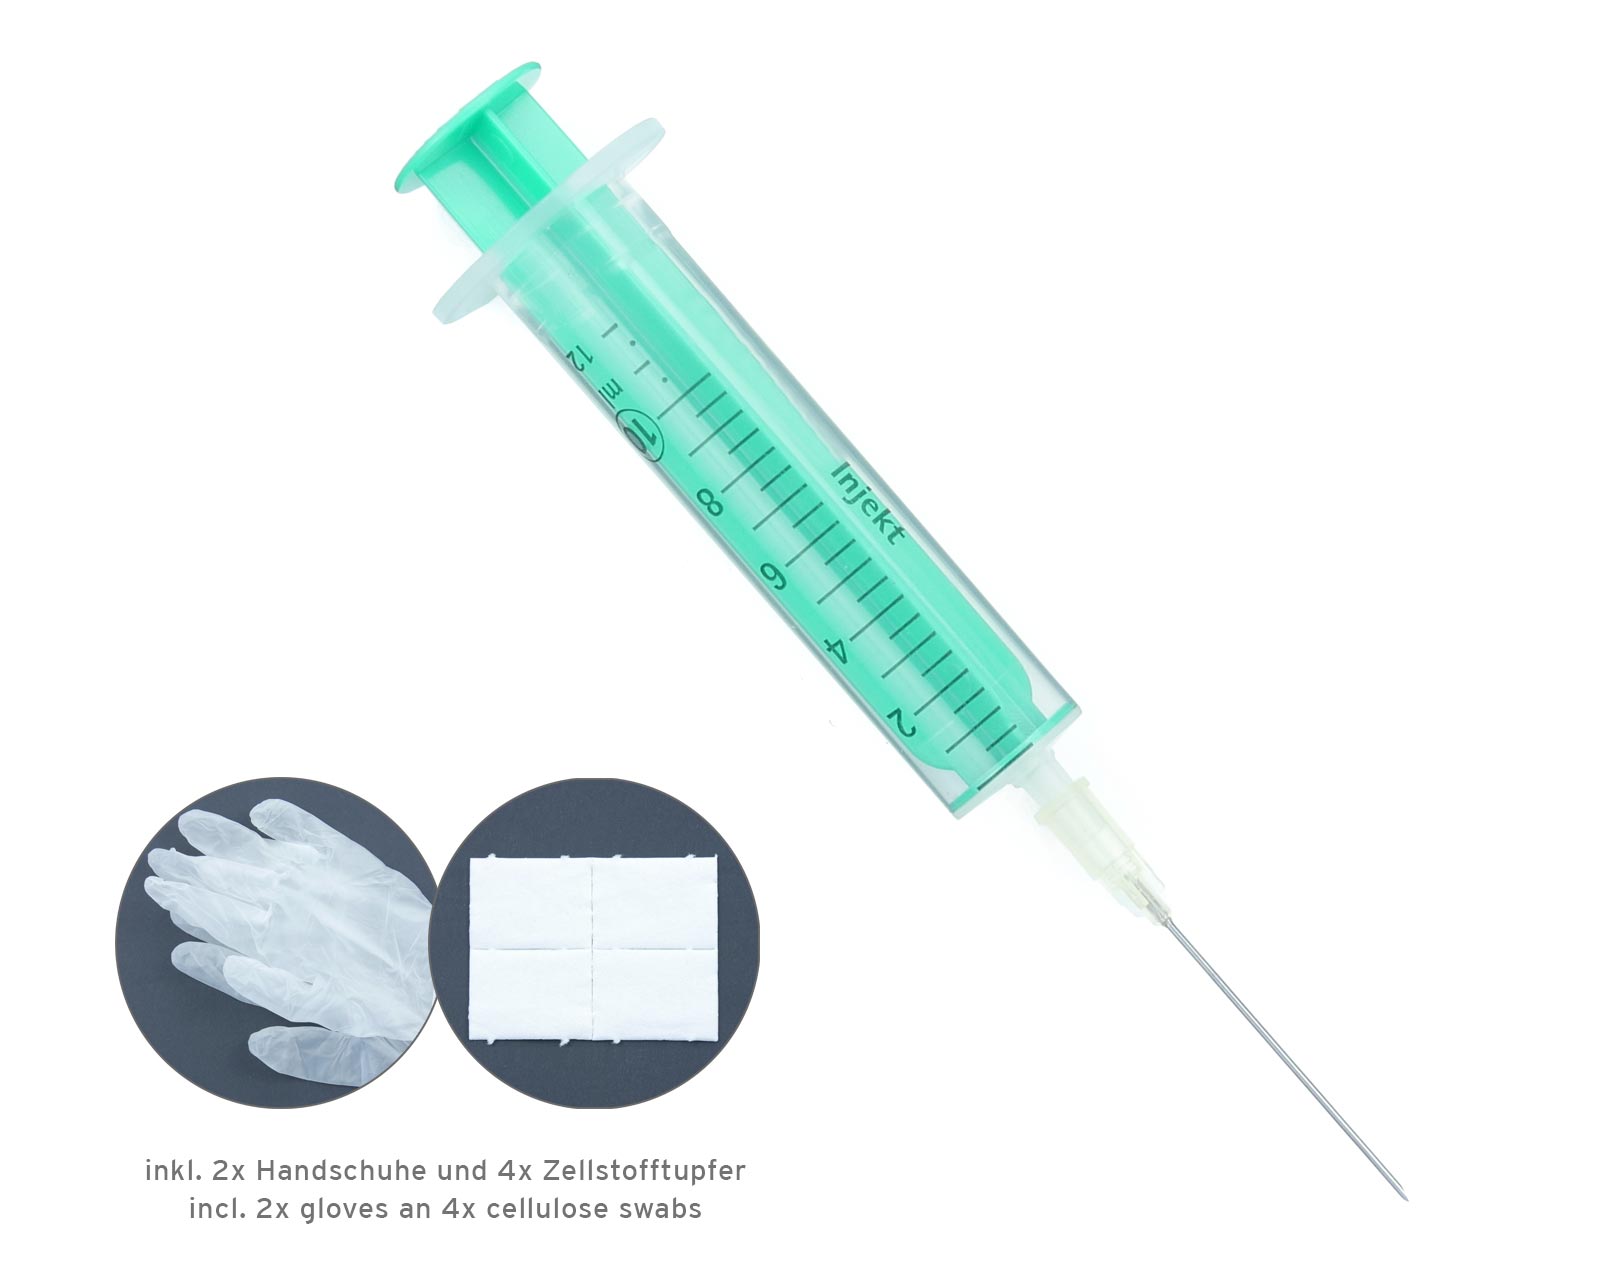 Ink Syringe with Needle (1 pcs.)